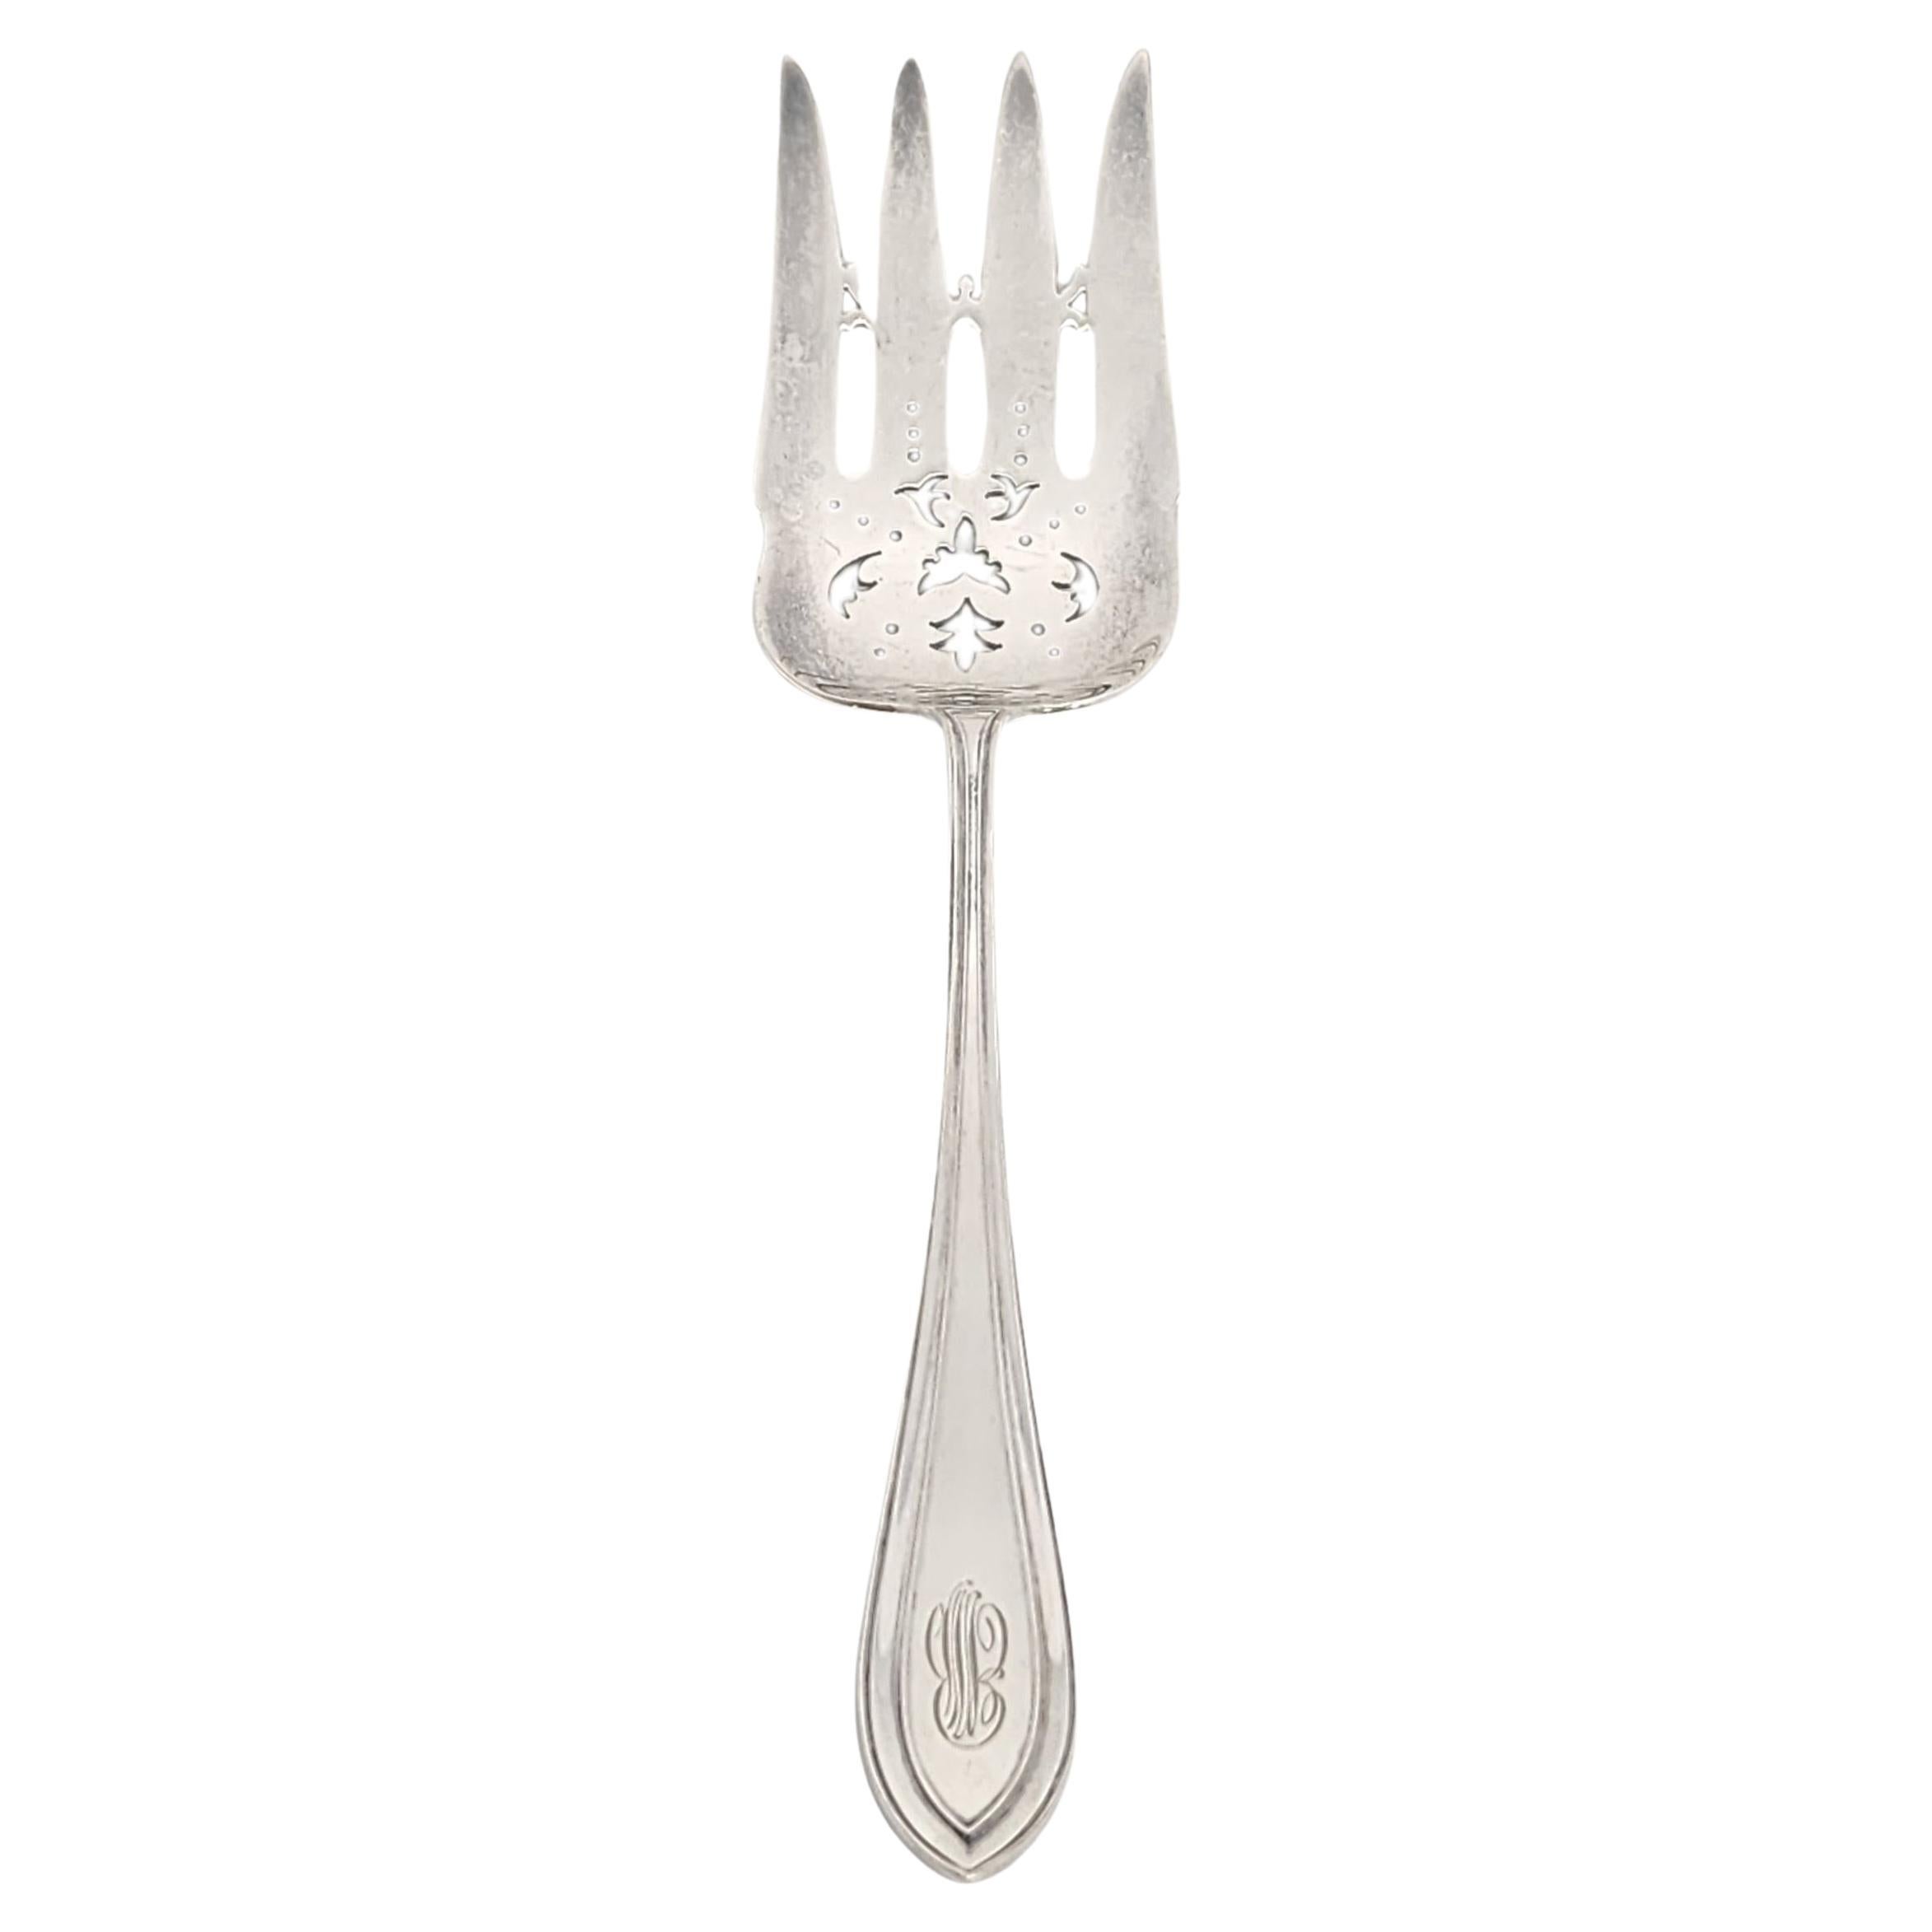 Dominick & Haff JE Caldwell Priscilla Sterling Silver Serving Fork w/mono #15600 For Sale